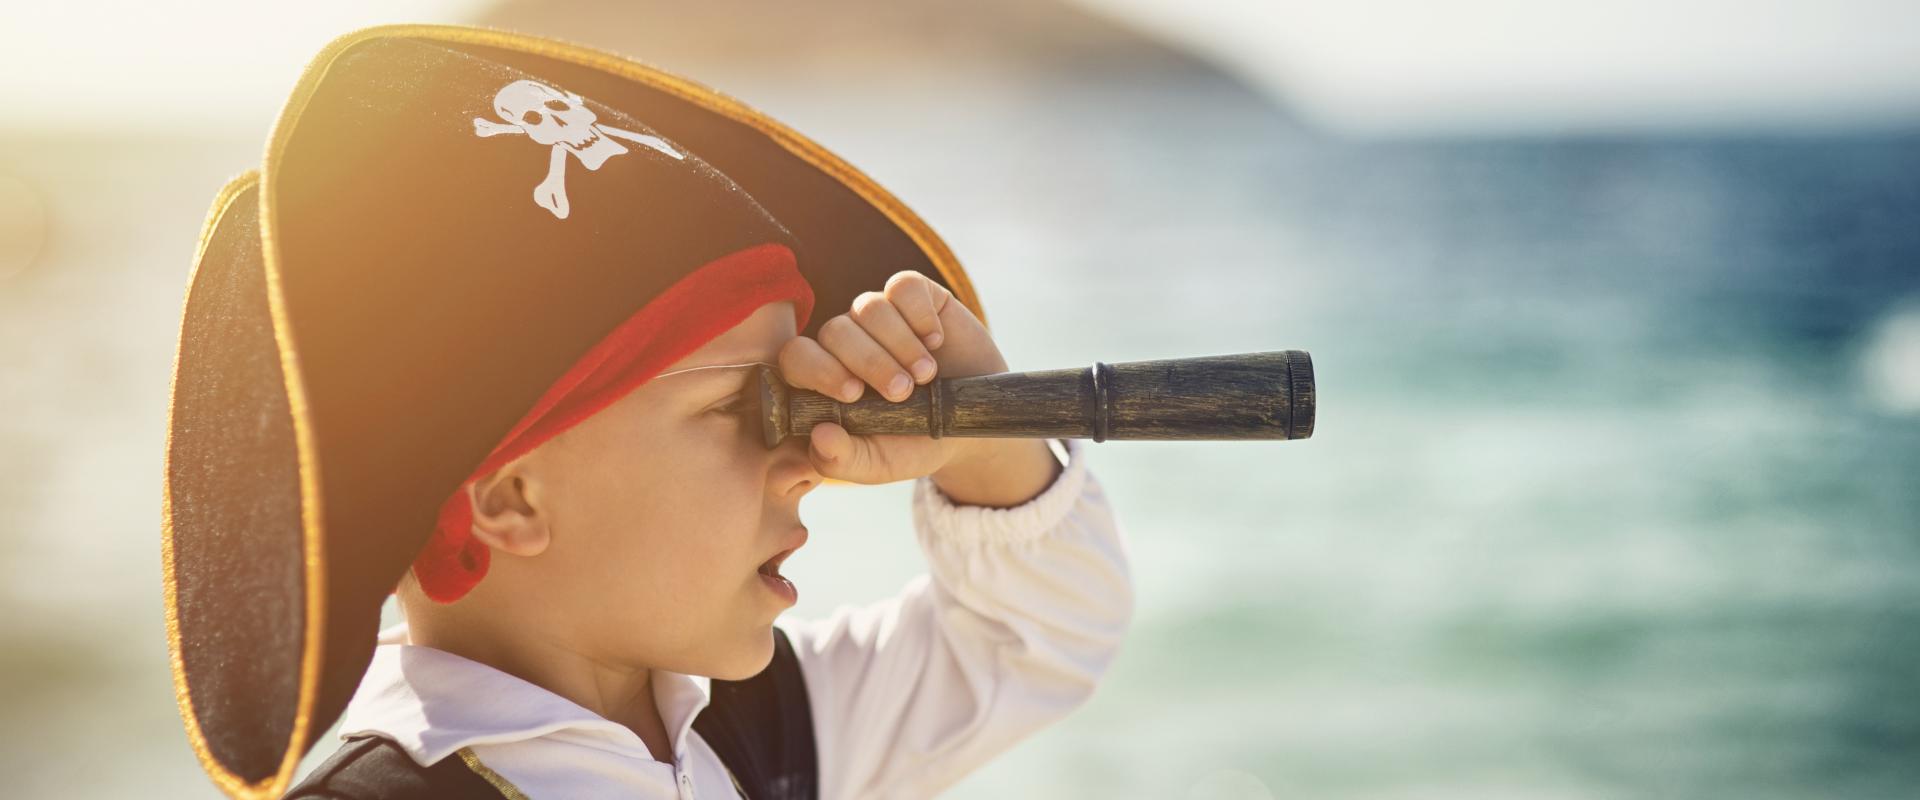 bachgen ifanc fel môr-leidr / young boy dressed as pirate